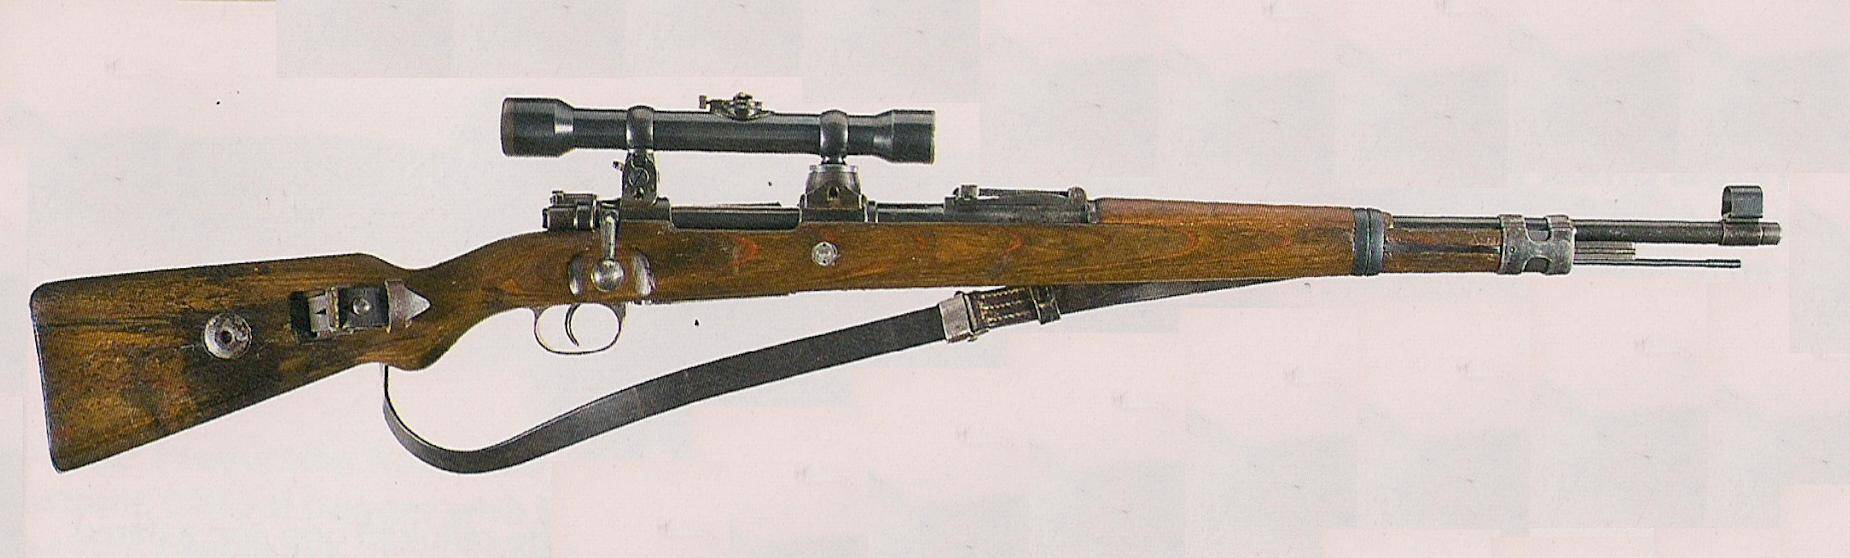 Немецкая винтовка "маузер": устройство, технические характеристики и фото